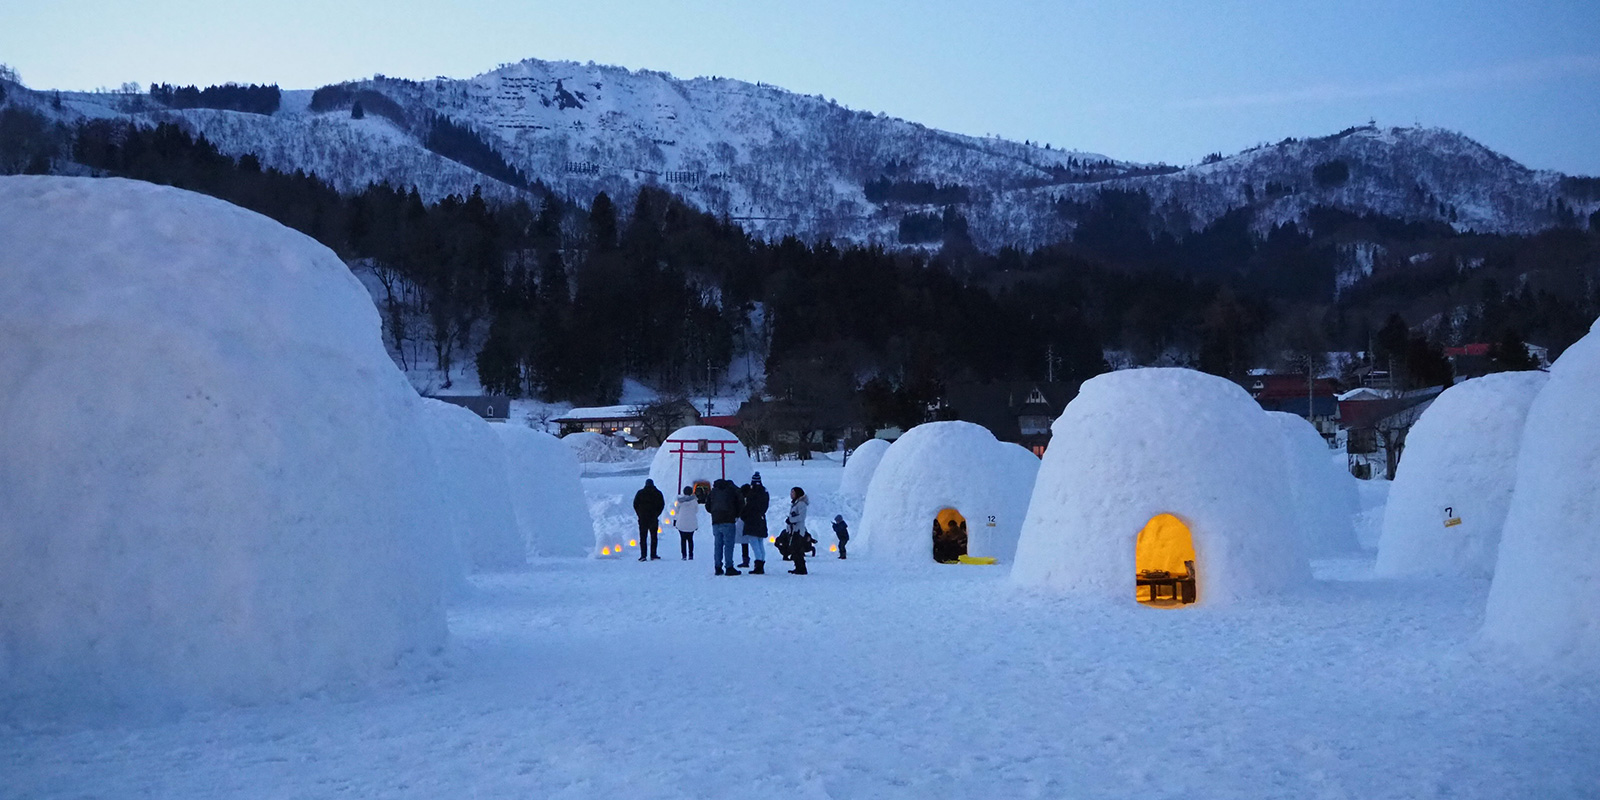 信州いいやま かまくらの里 長野県飯山市 雪原に大きなかまくらが並ぶ 信州いいやまの冬の風物詩